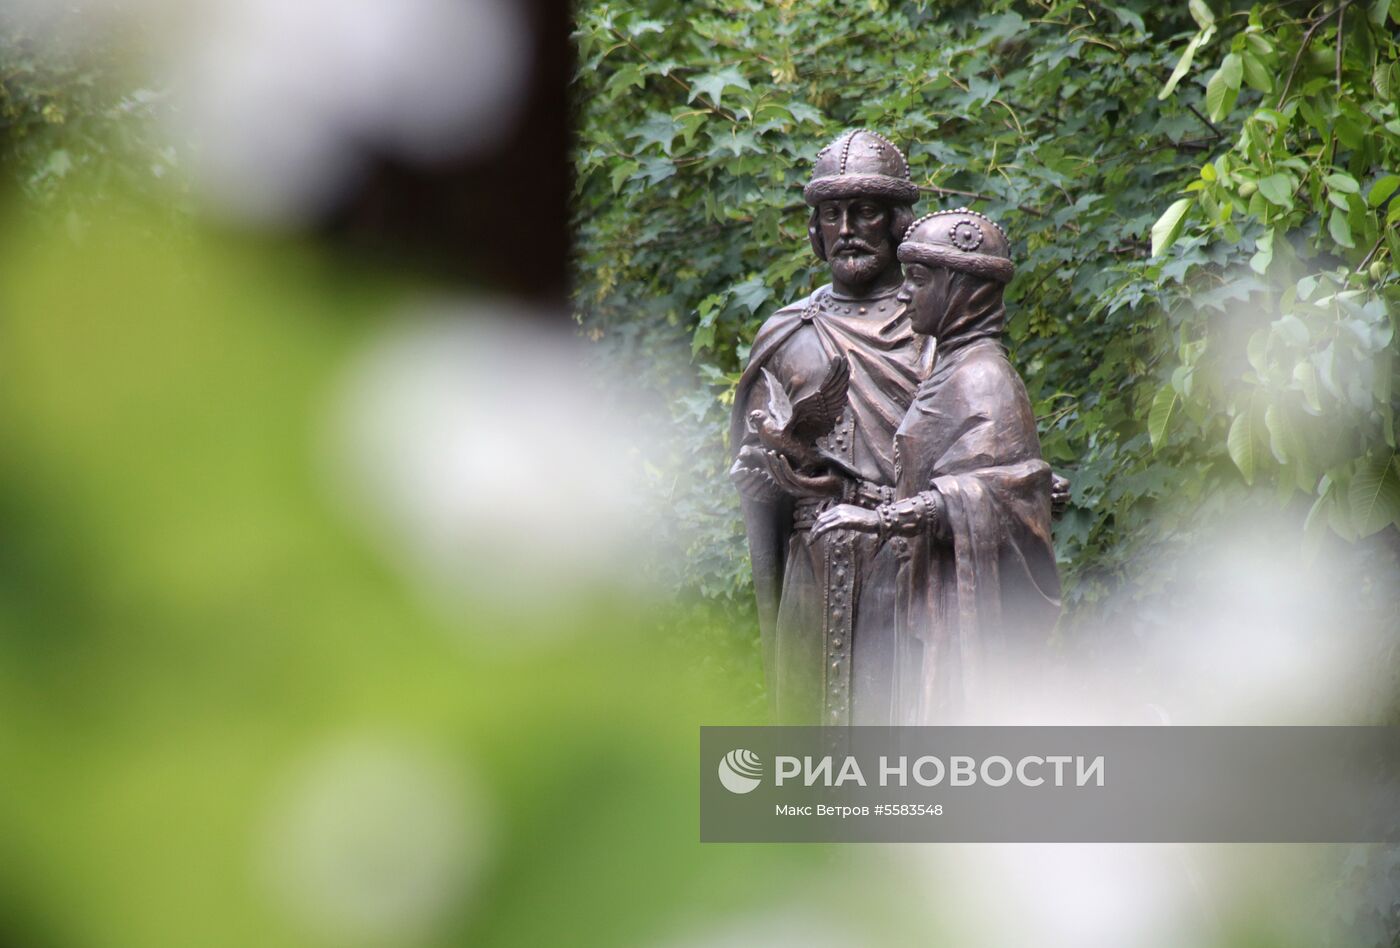 Открытие памятника святым Петру и Февронии в Крыму